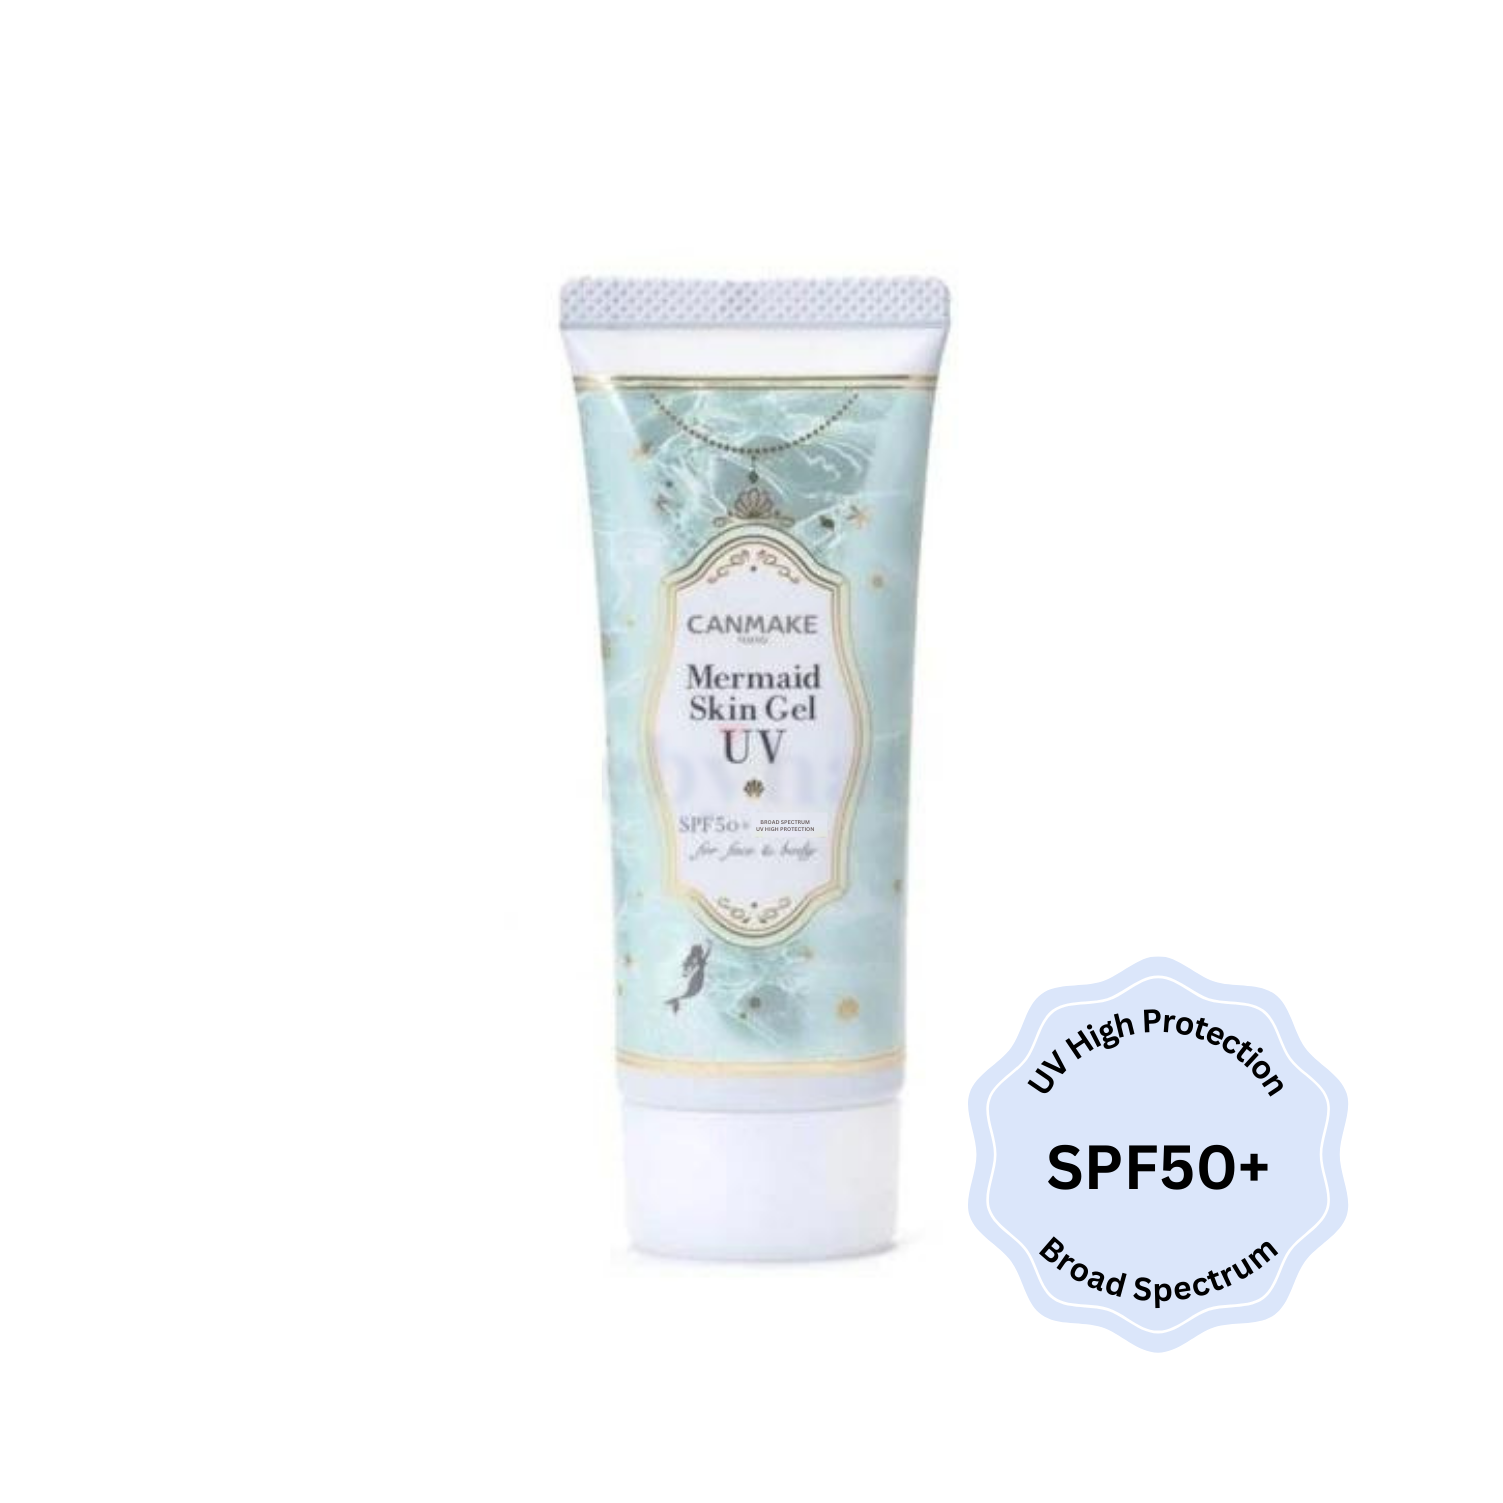 Mermaid Skin Gel UV [Mint] SPF50+ Broad Spectrum